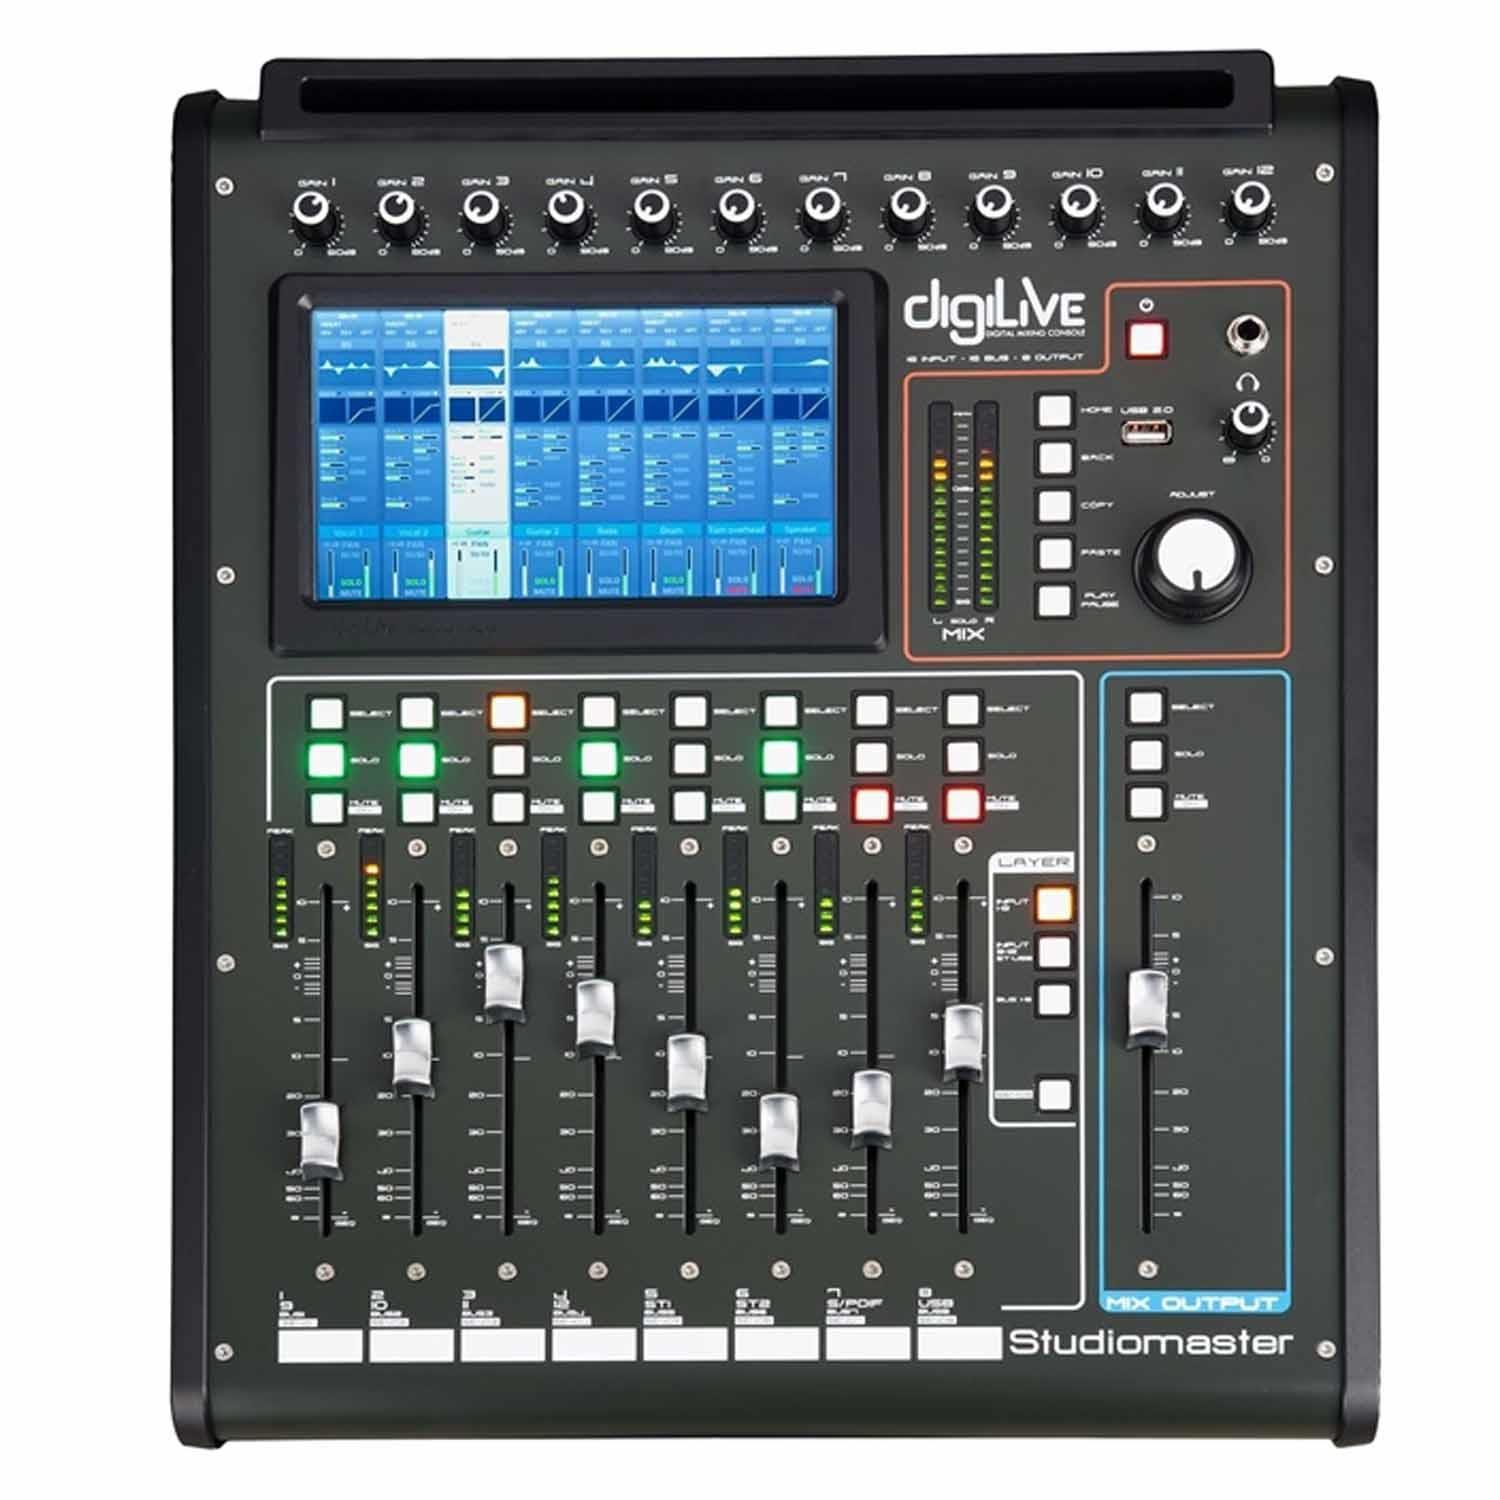 Studiomaster DIGILIVE 16 16 input Compact Digital Mixer - DY Pro Audio